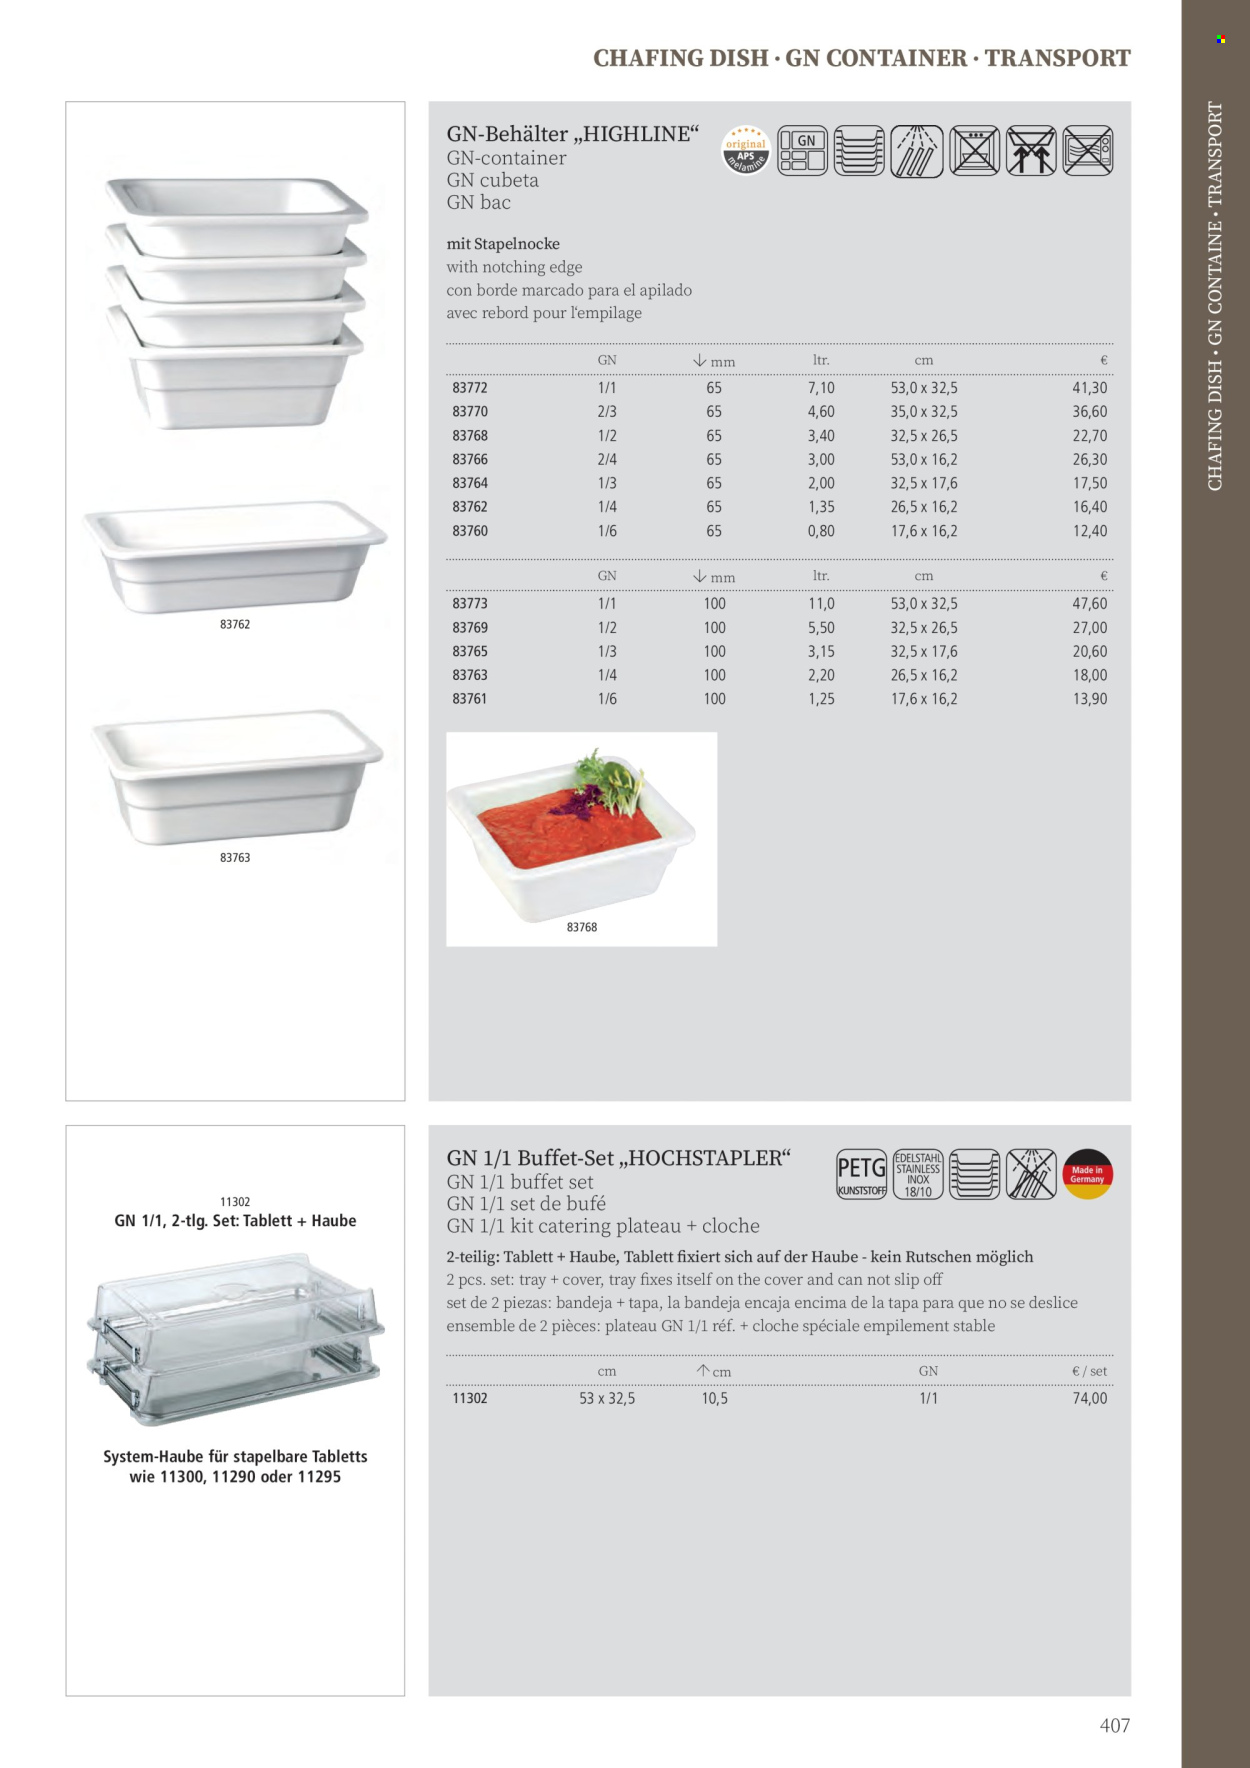 Angebote Metro - Verkaufsprodukte - Container, Tablett, Chafing Dish, Behälter, Slip. Seite 407.